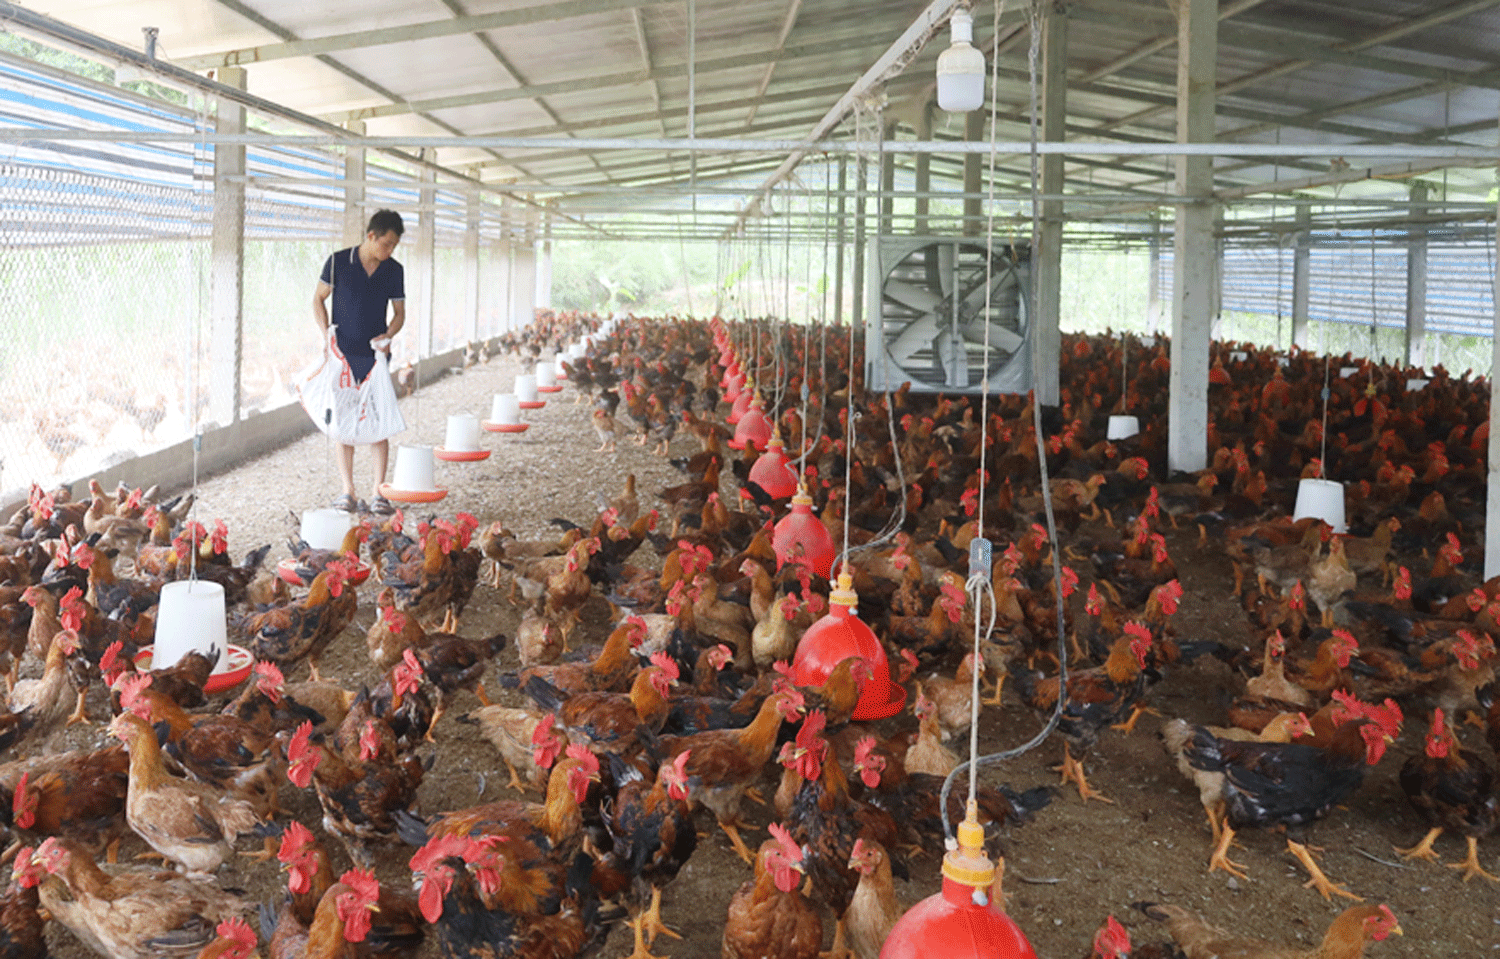 Nuôi gà thời tăng giá, cứ bán 1kg gà đồi, nông dân Lào Cai lãi 25.000 - 30.000 đồng/kg - Ảnh 1.